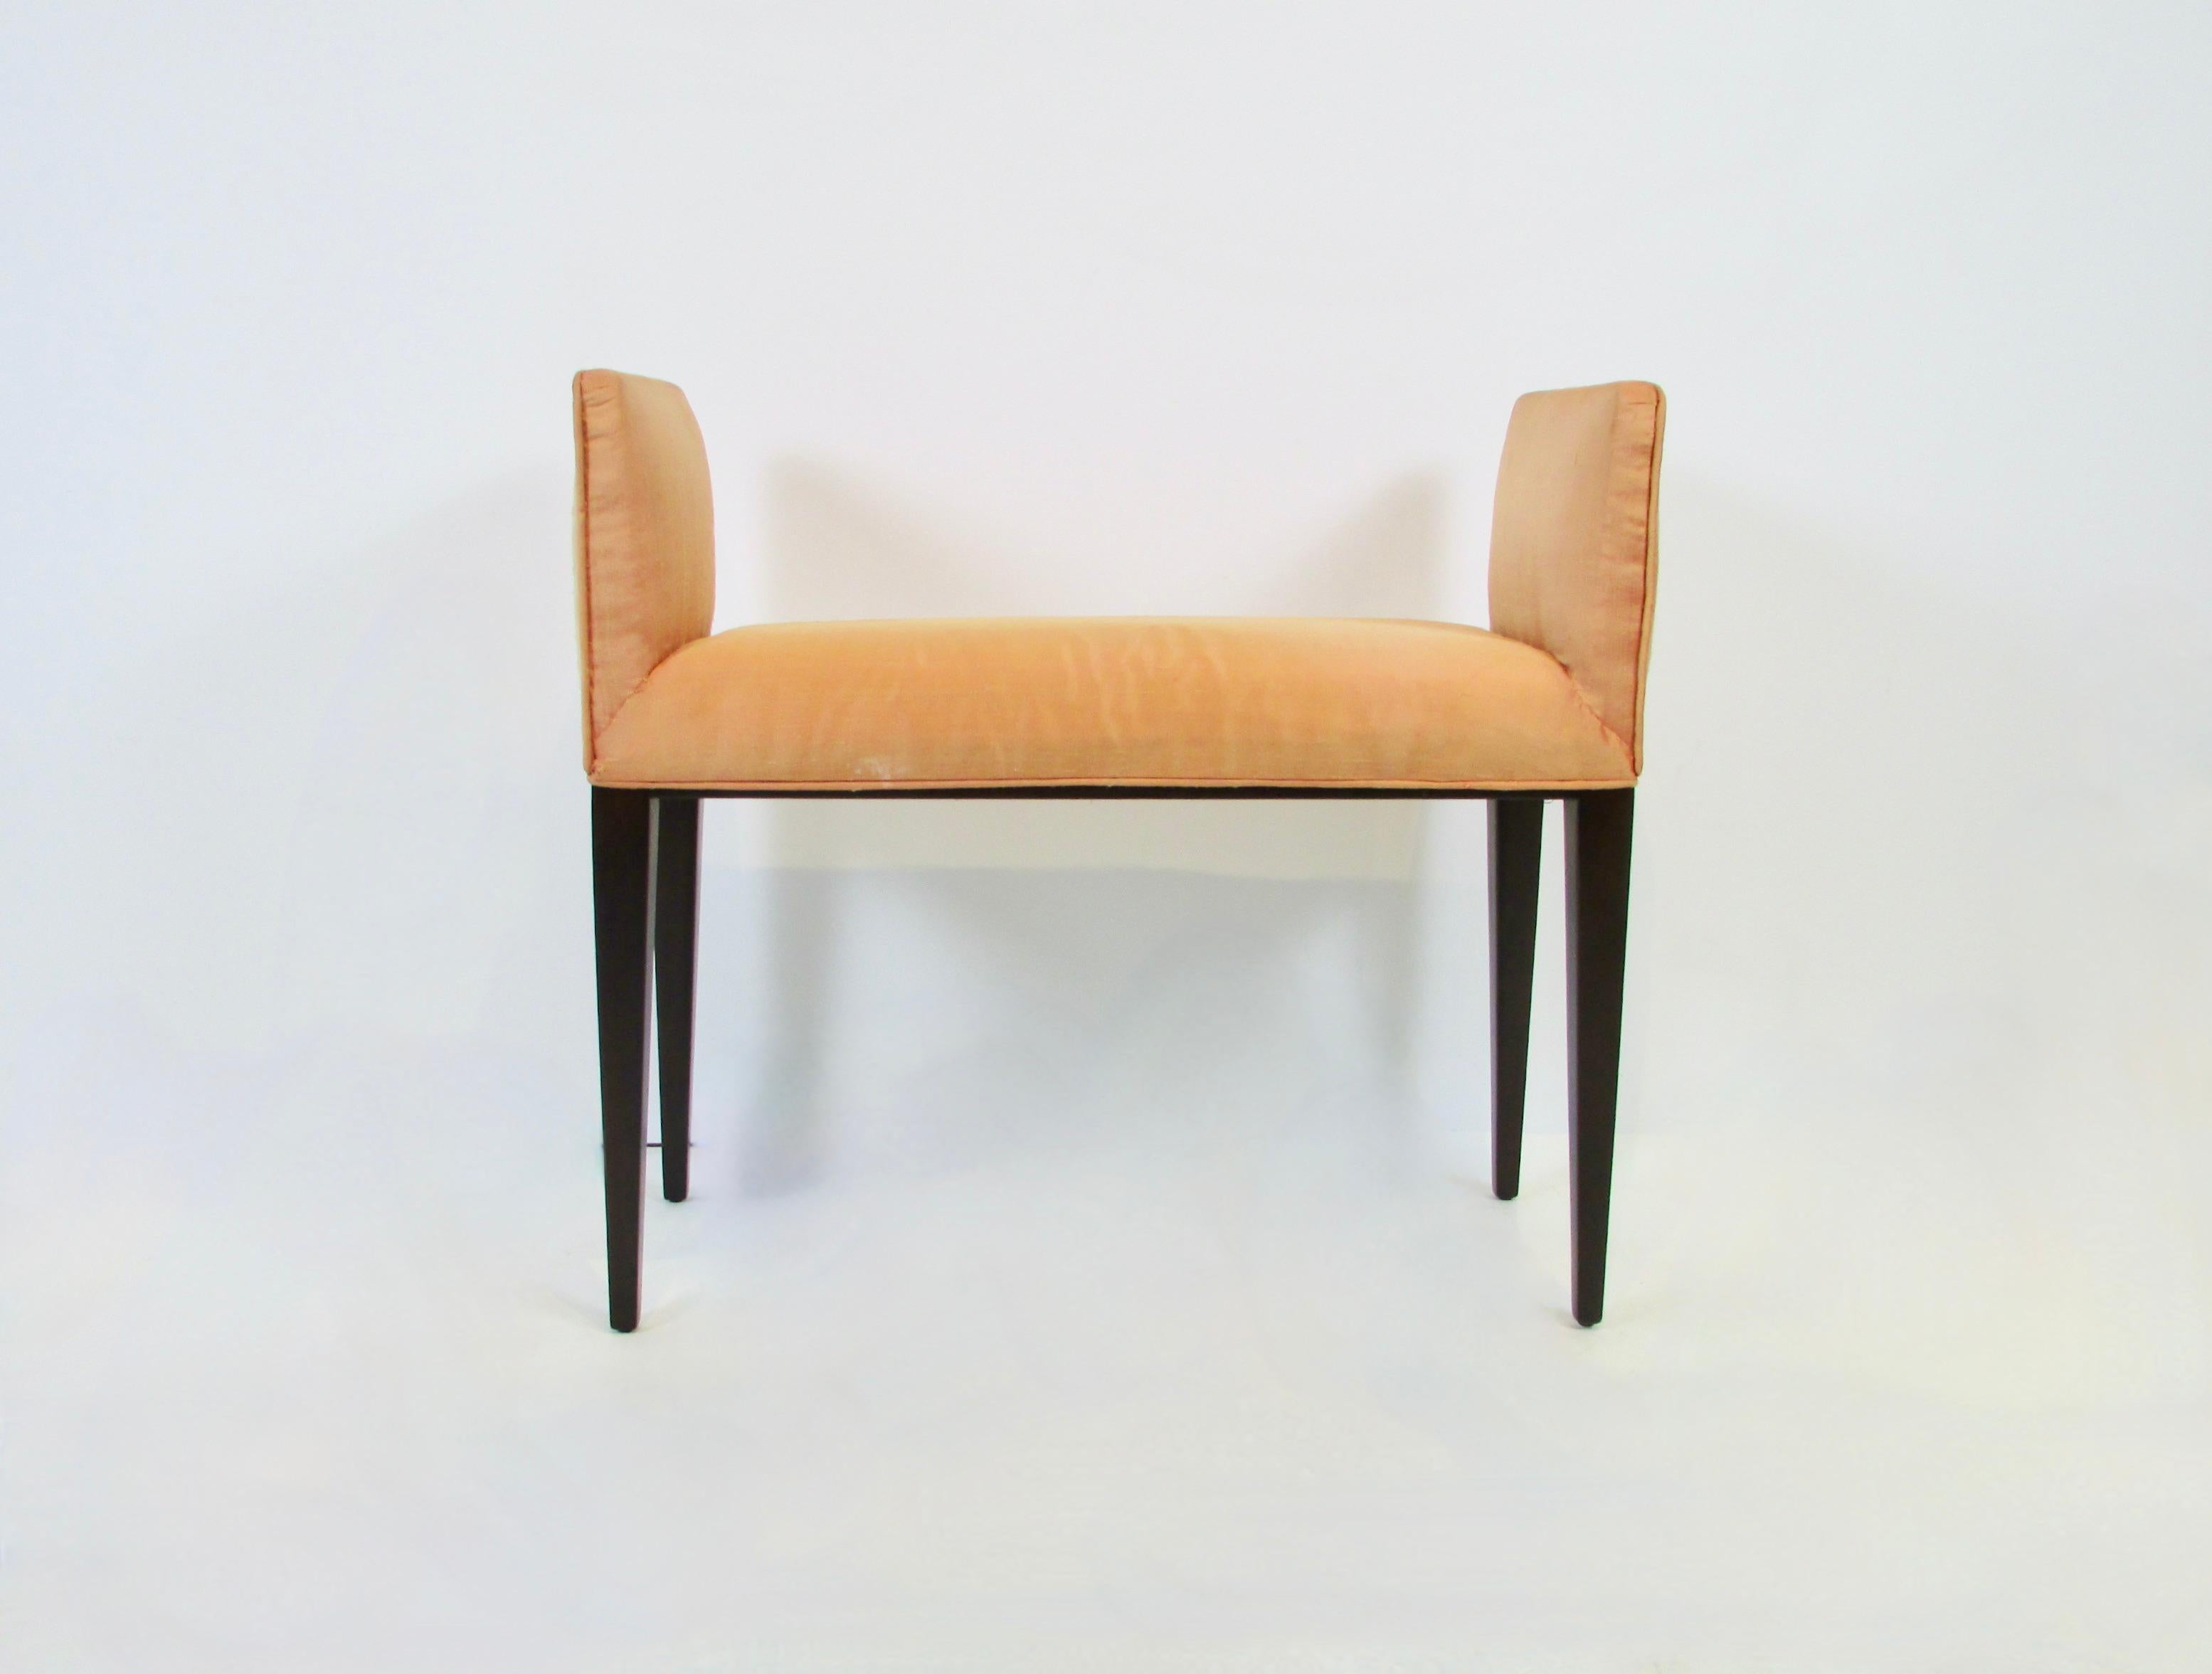 Entwurf von Edward Wormley für Dunbar-Möbel aus Berne, Indiana. Elegante, rechteckige Bank auf hohen, sich verjüngenden Beinen mit hohen Seiten. Ich biete die Bank in einem soliden und stabilen Zustand wie vorgefunden an. So kann der Kunde den Bezug